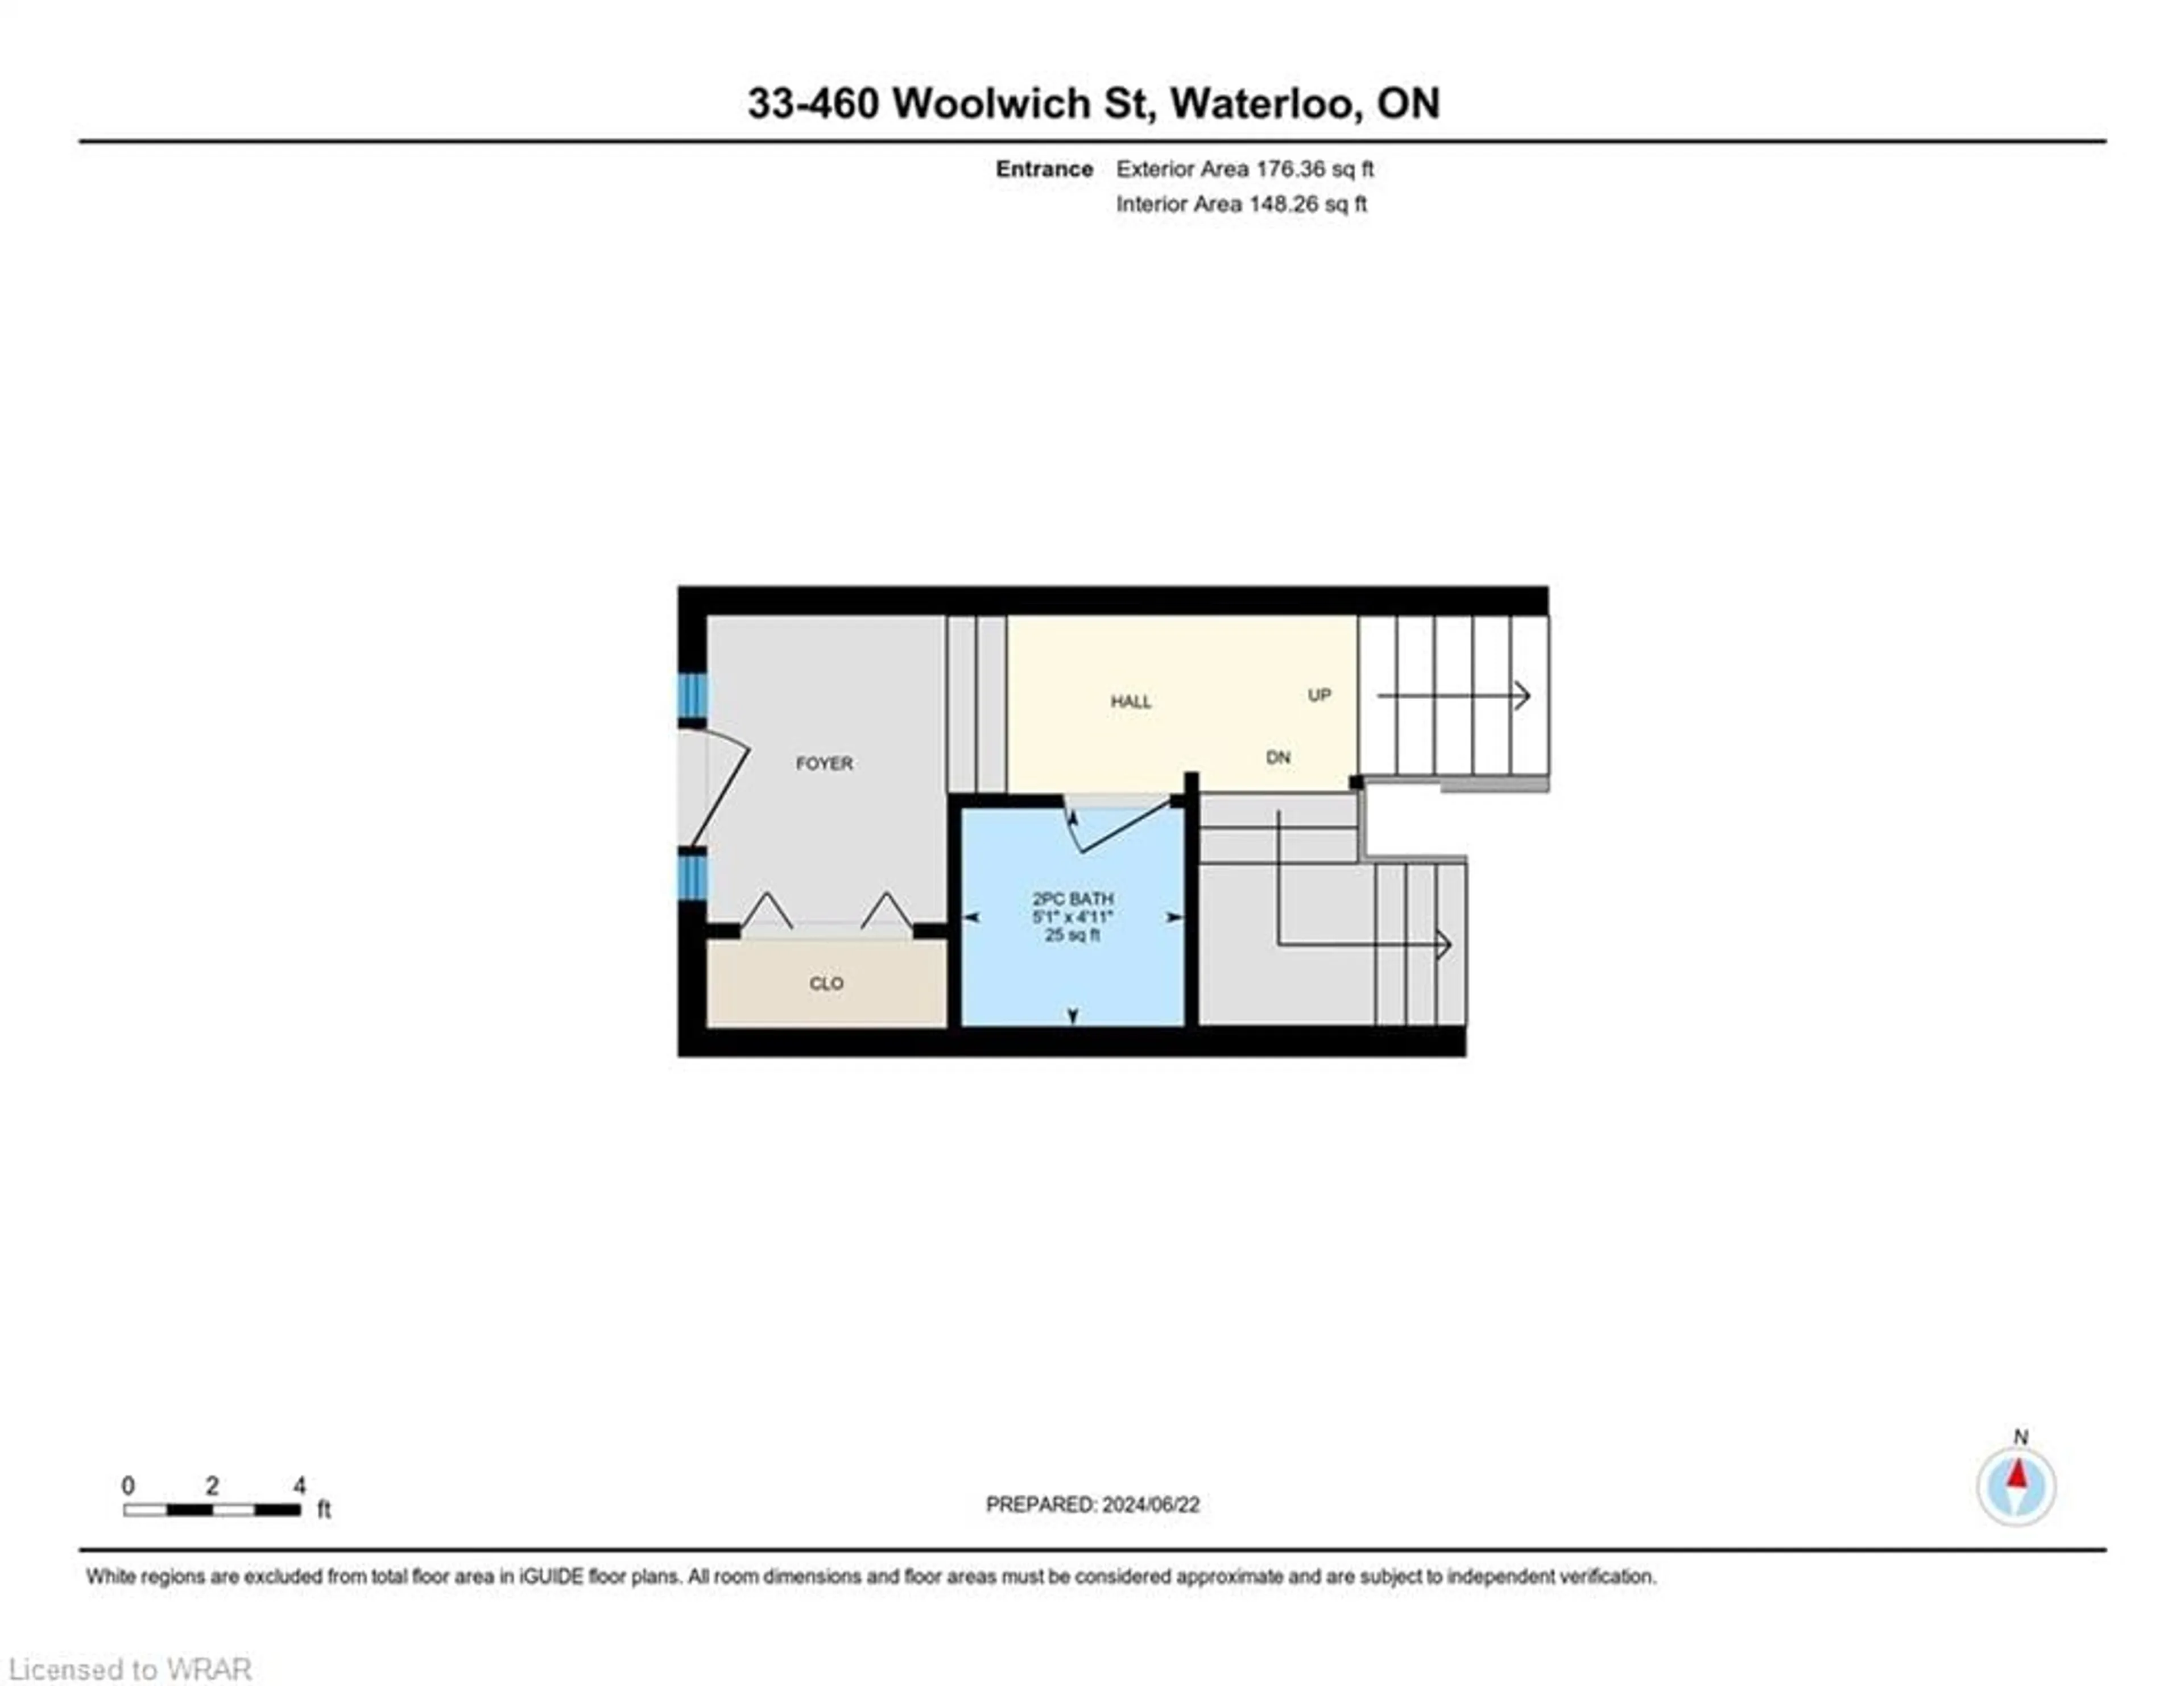 Floor plan for 460 Woolwich St #33, Waterloo Ontario N2K 4G8